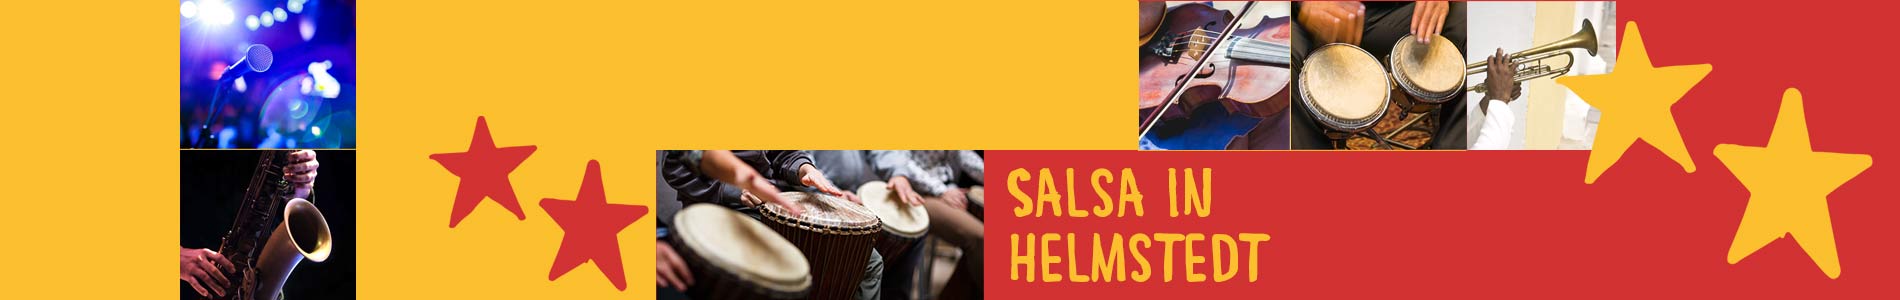 Salsa in Helmstedt – Salsa lernen und tanzen, Tanzkurse, Partys, Veranstaltungen